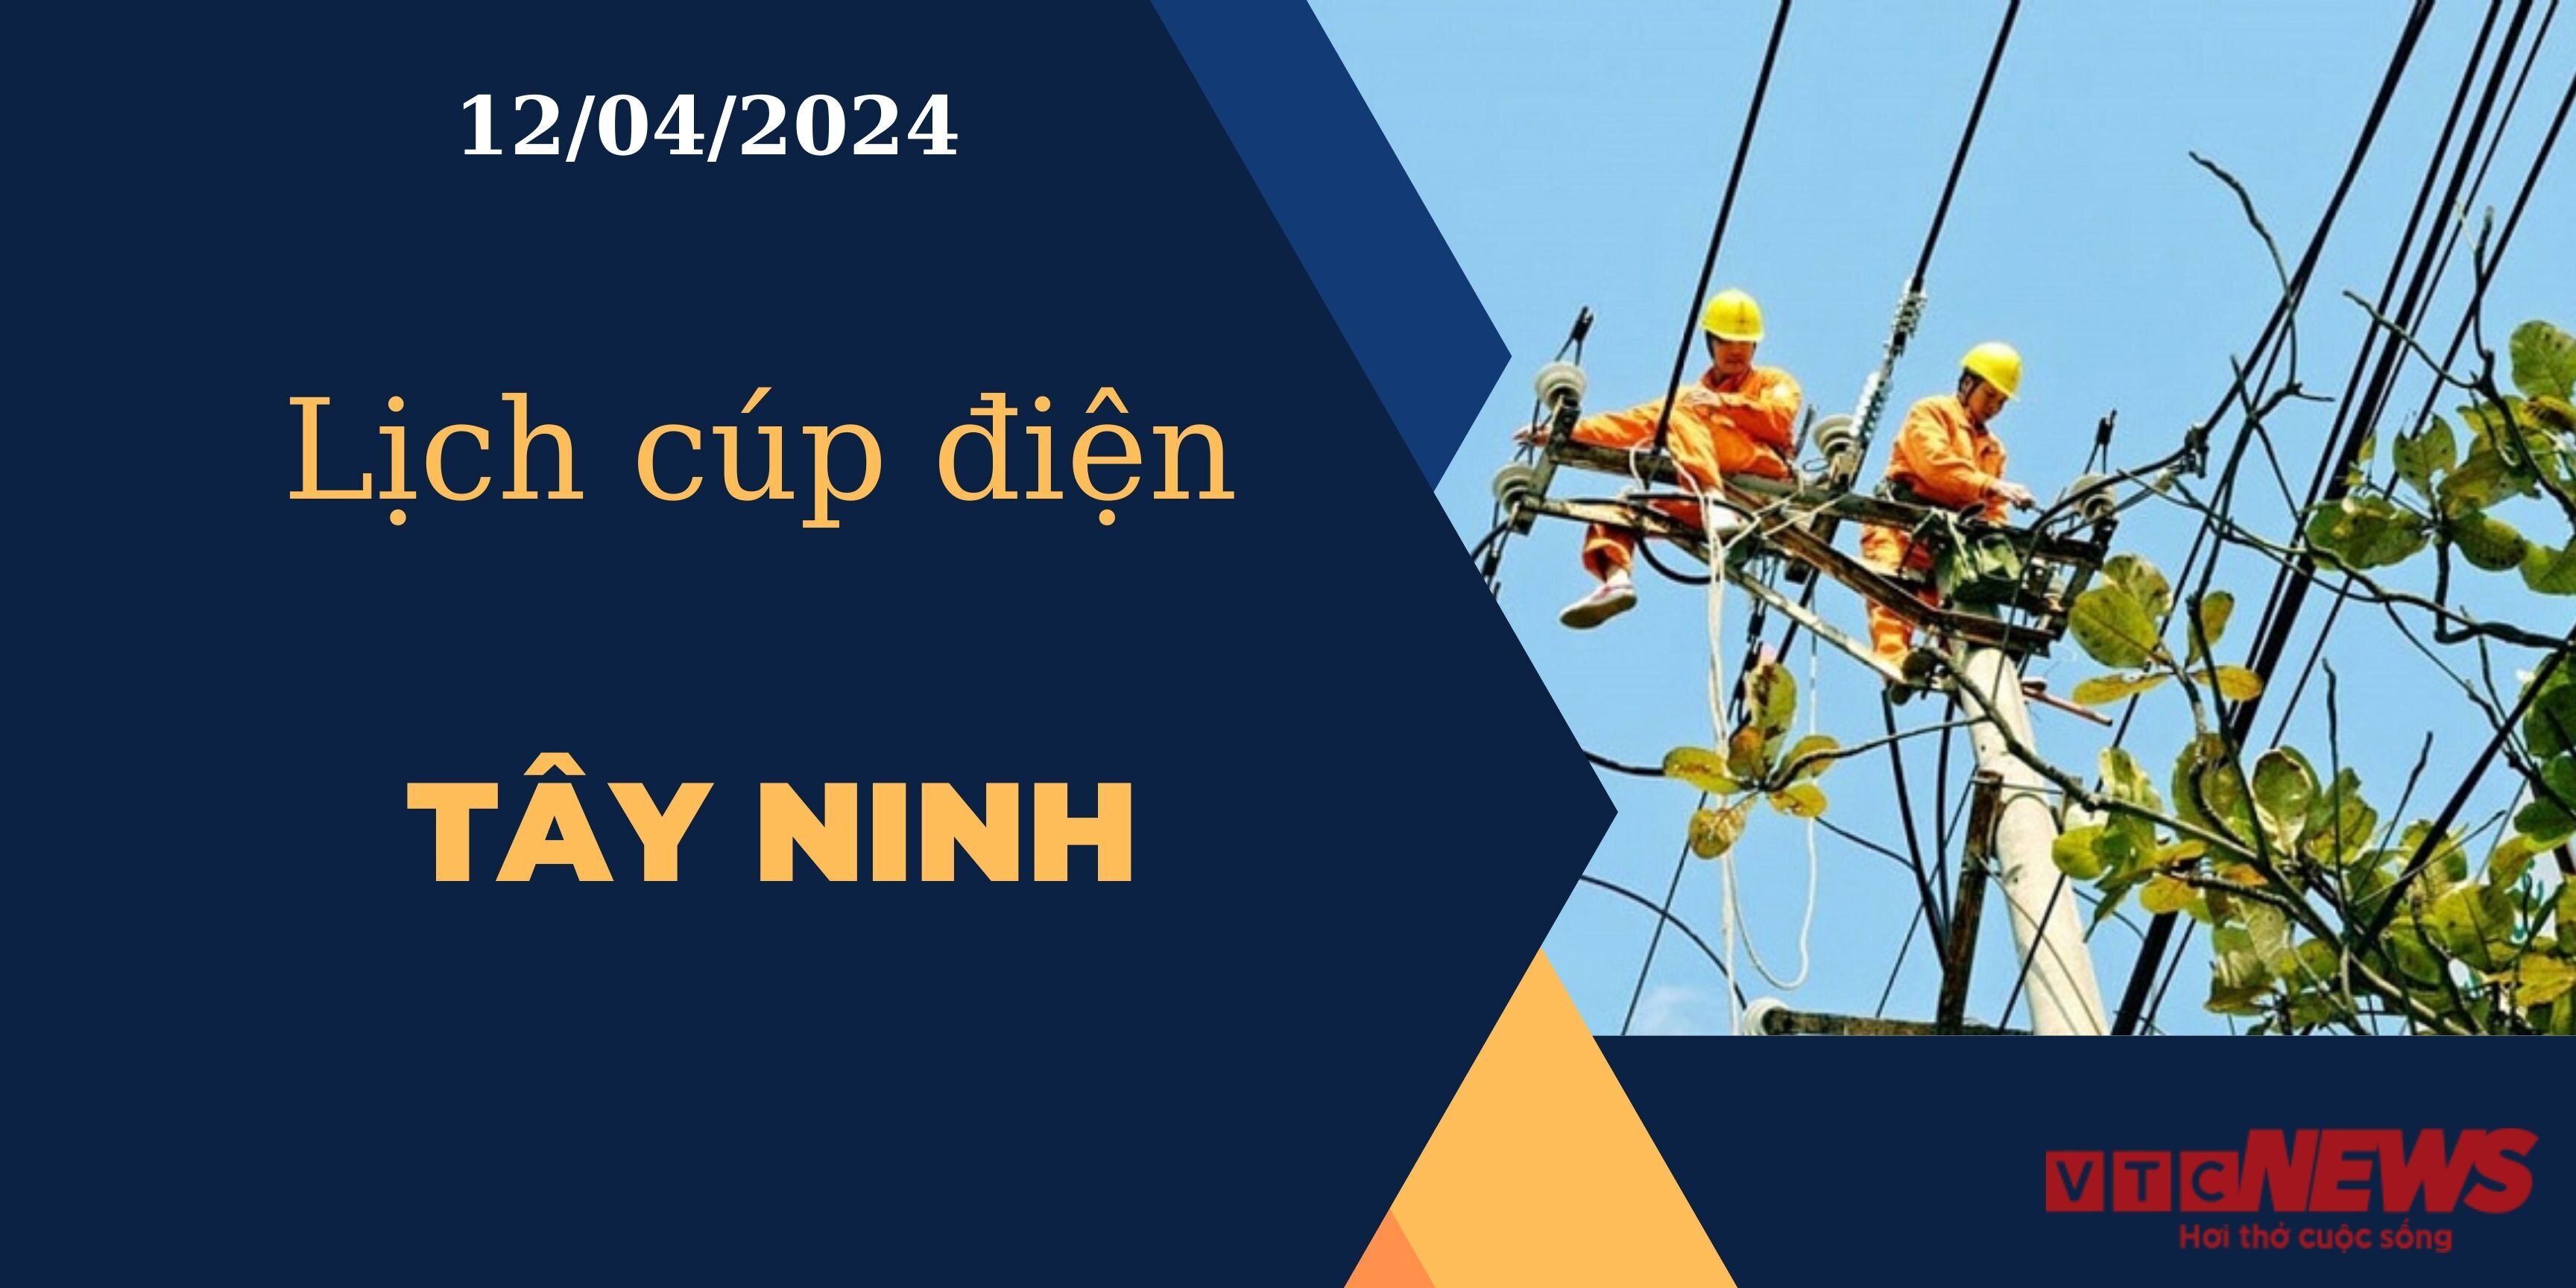 Lịch cúp điện hôm nay ngày 12/04/2024 tại Tây Ninh